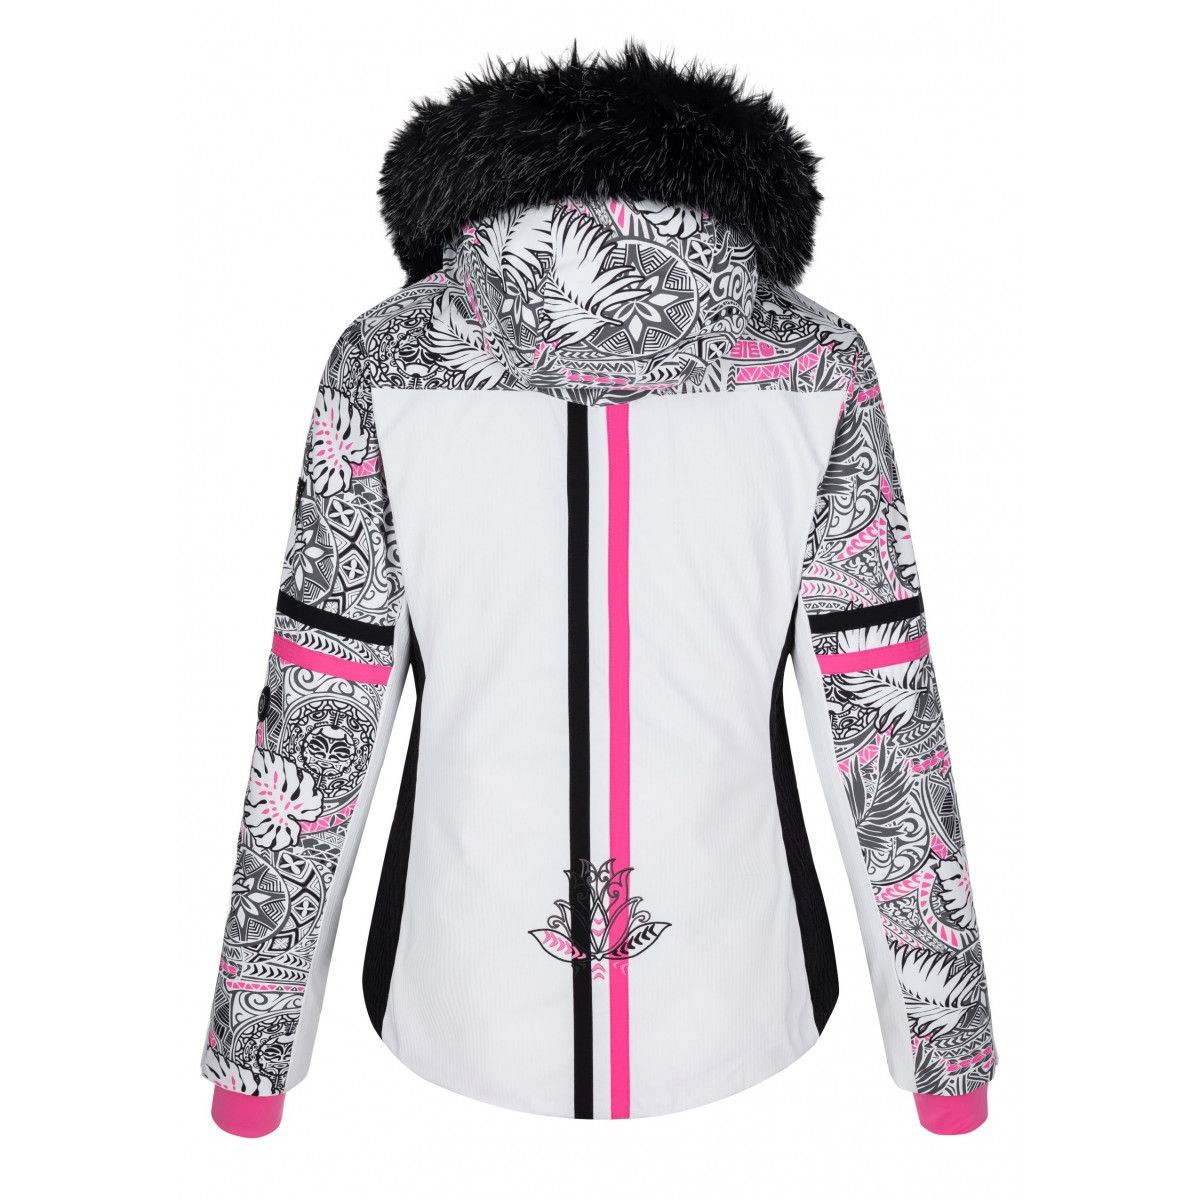 Lady`s Ski Jacket with heating system Lena-W Heat WHT KILPI - view 2